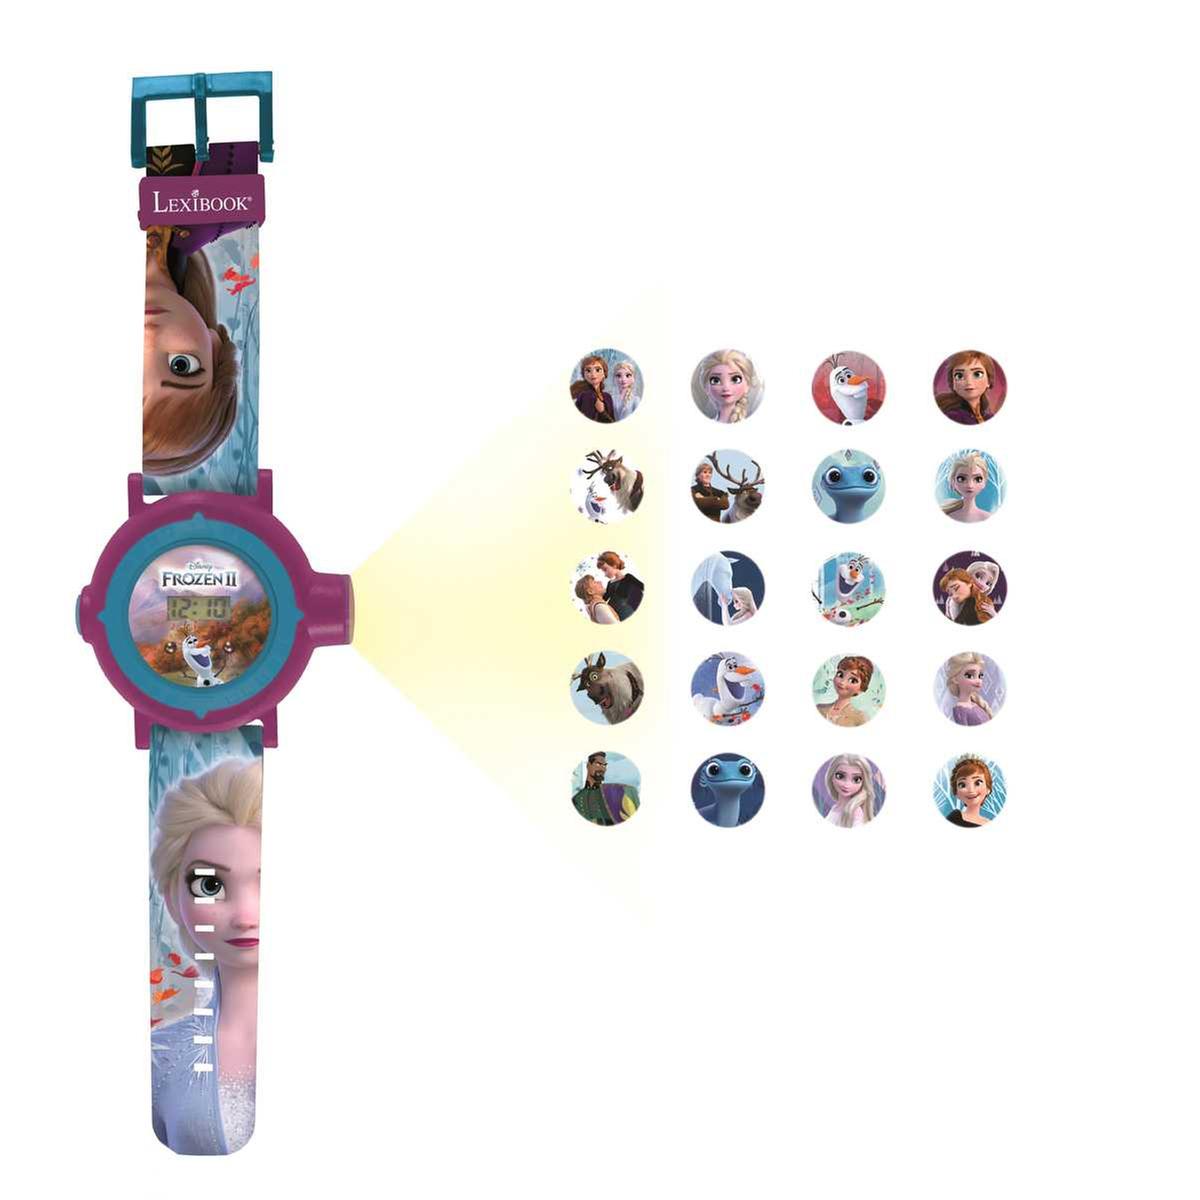 Frozen - Reloj proyector digital con 20 proyecciones, Relojes